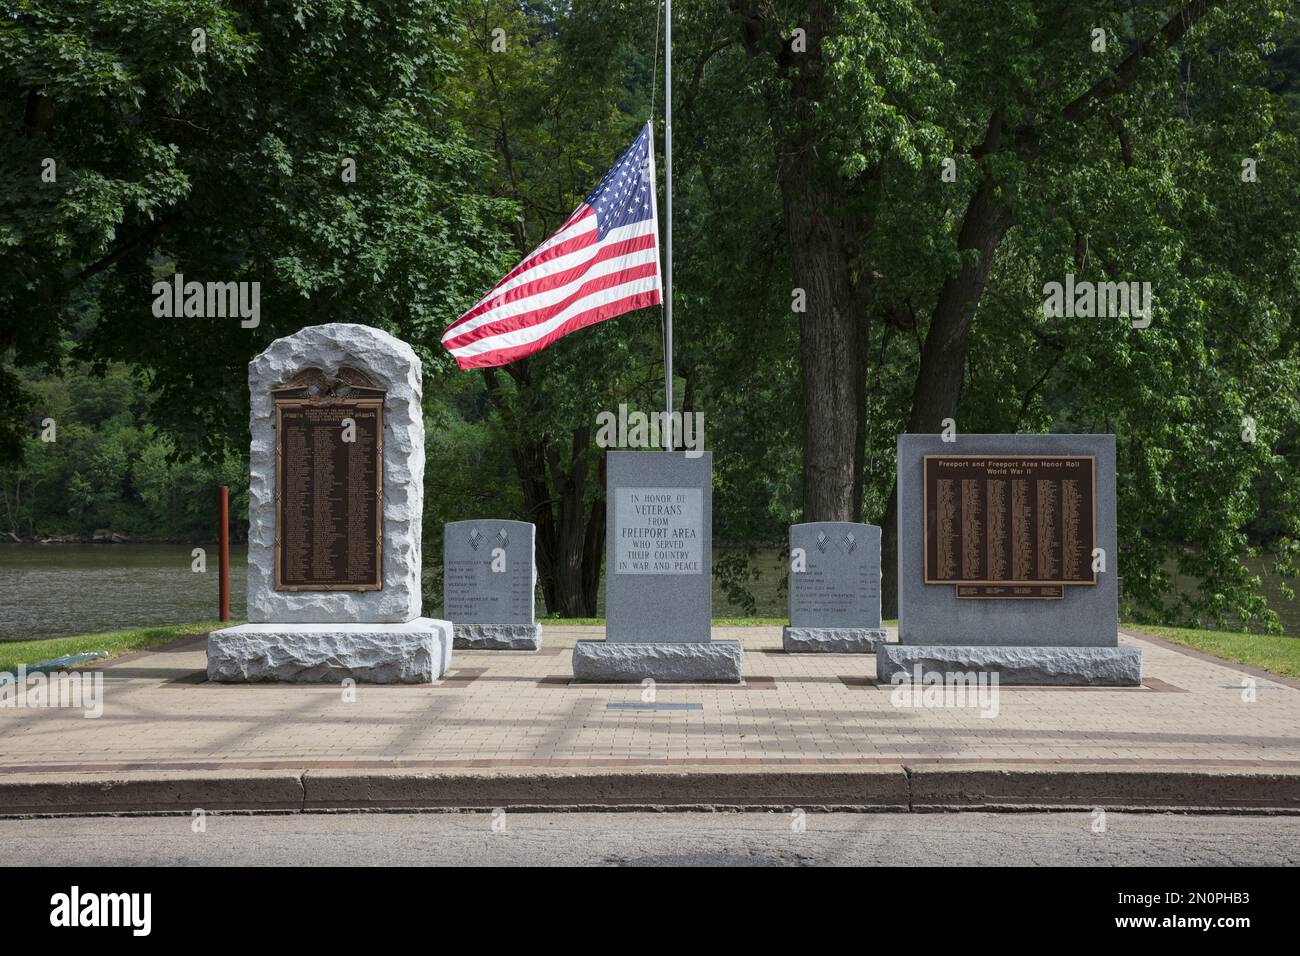 Monumentos conmemorativos de guerra, lápidas inscritas y bandera estadounidense en honor a los veteranos de guerra estadounidenses en un cementerio. Foto de stock